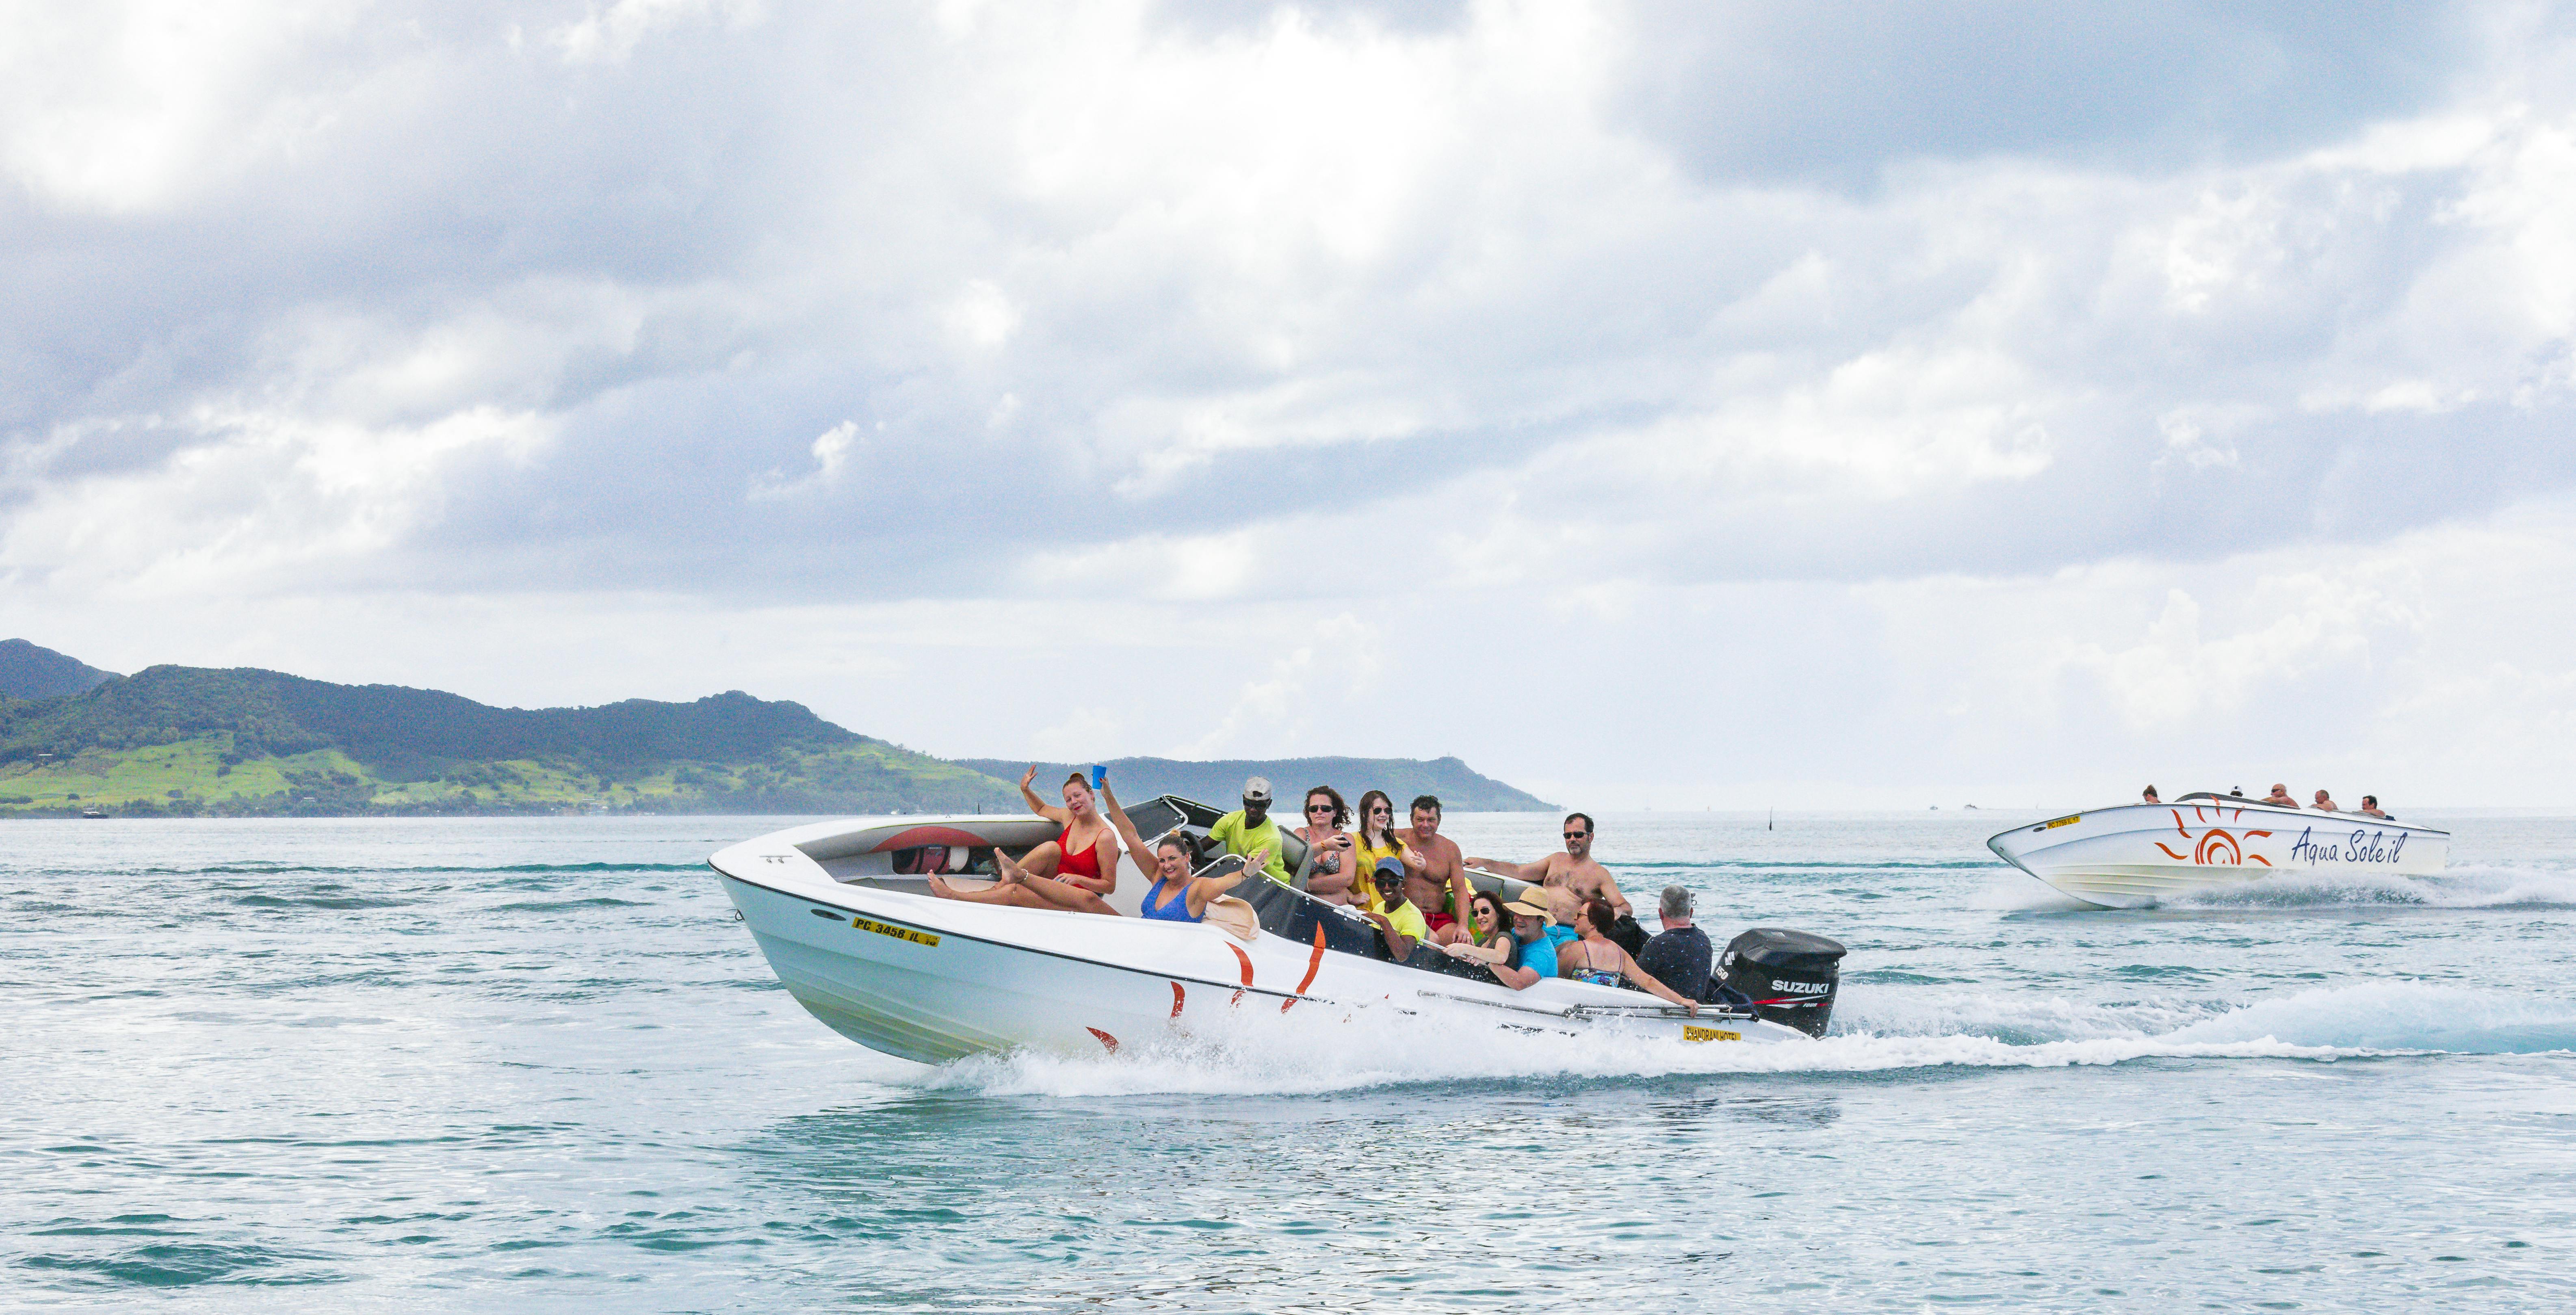 mauritius 5 island speedboat tour